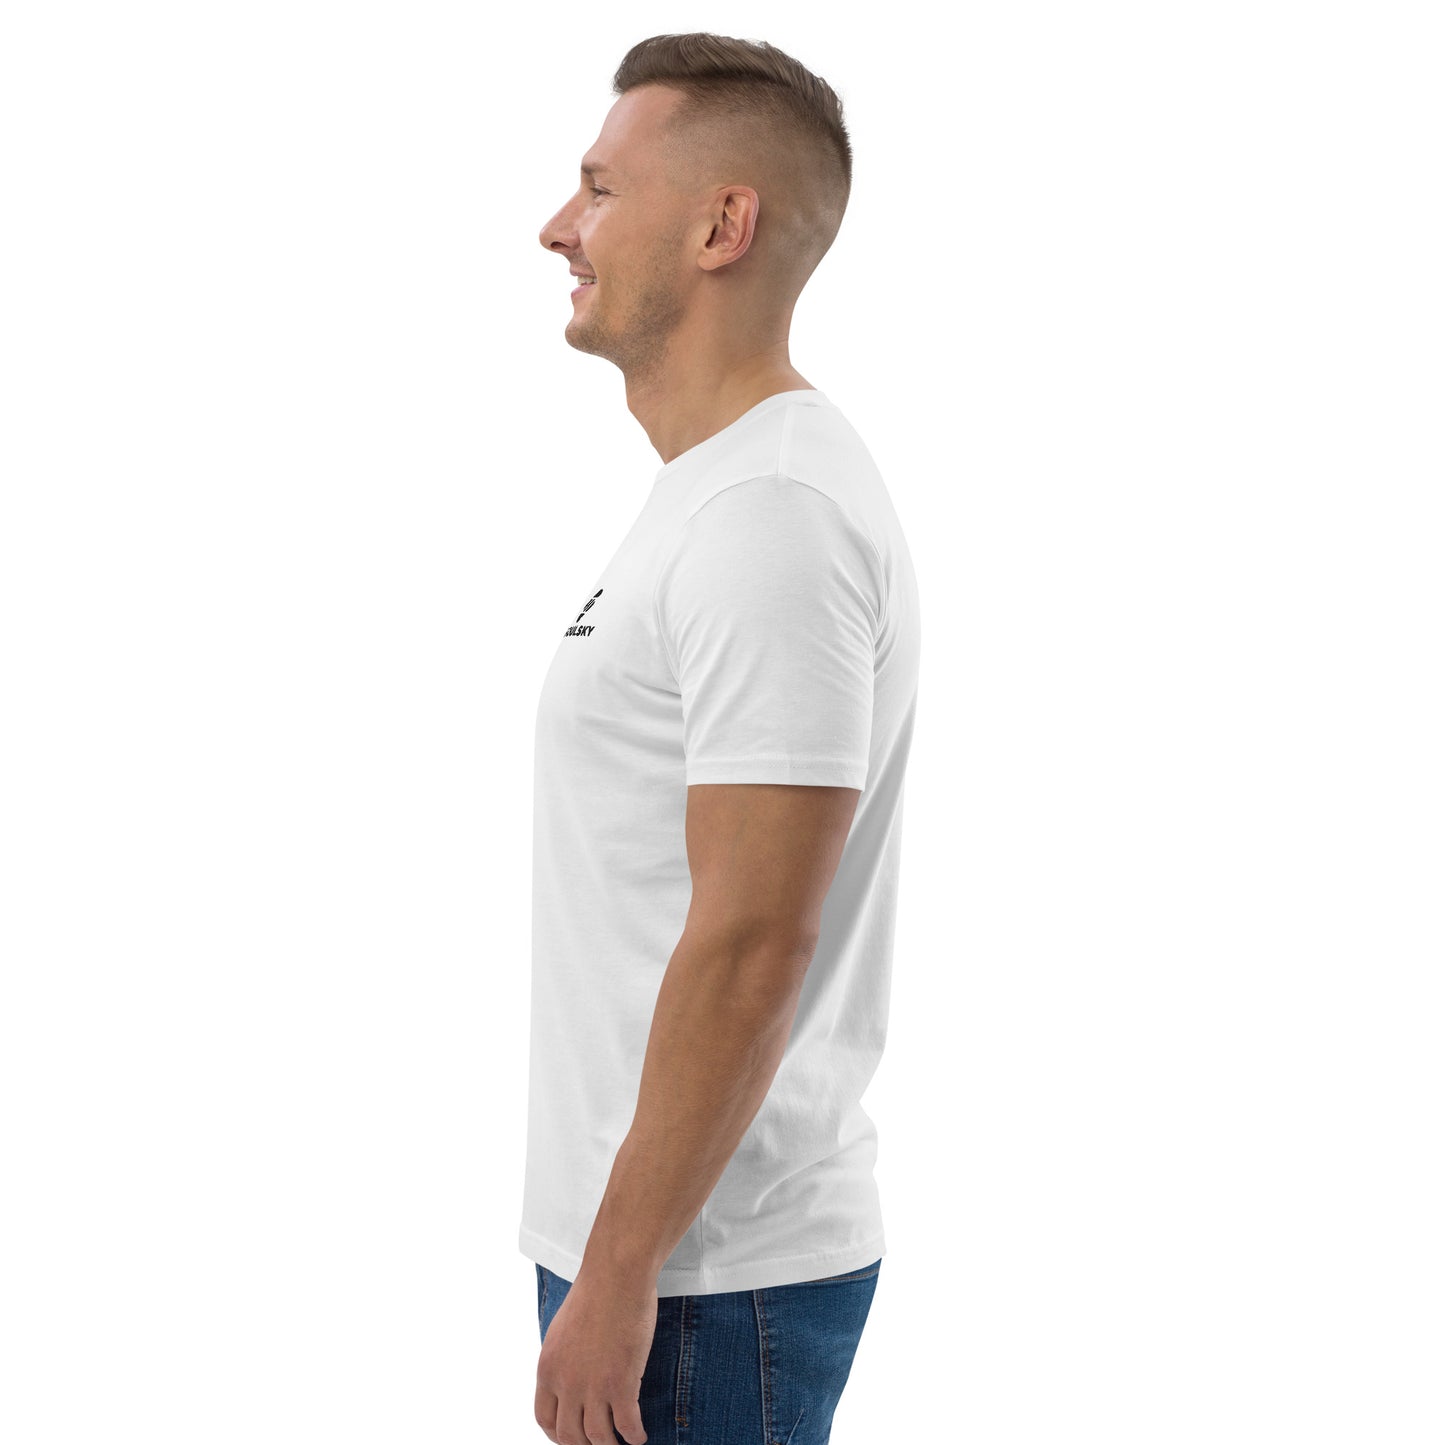 SOULSKY Logo Unisex Crewneck T-shirt -  White